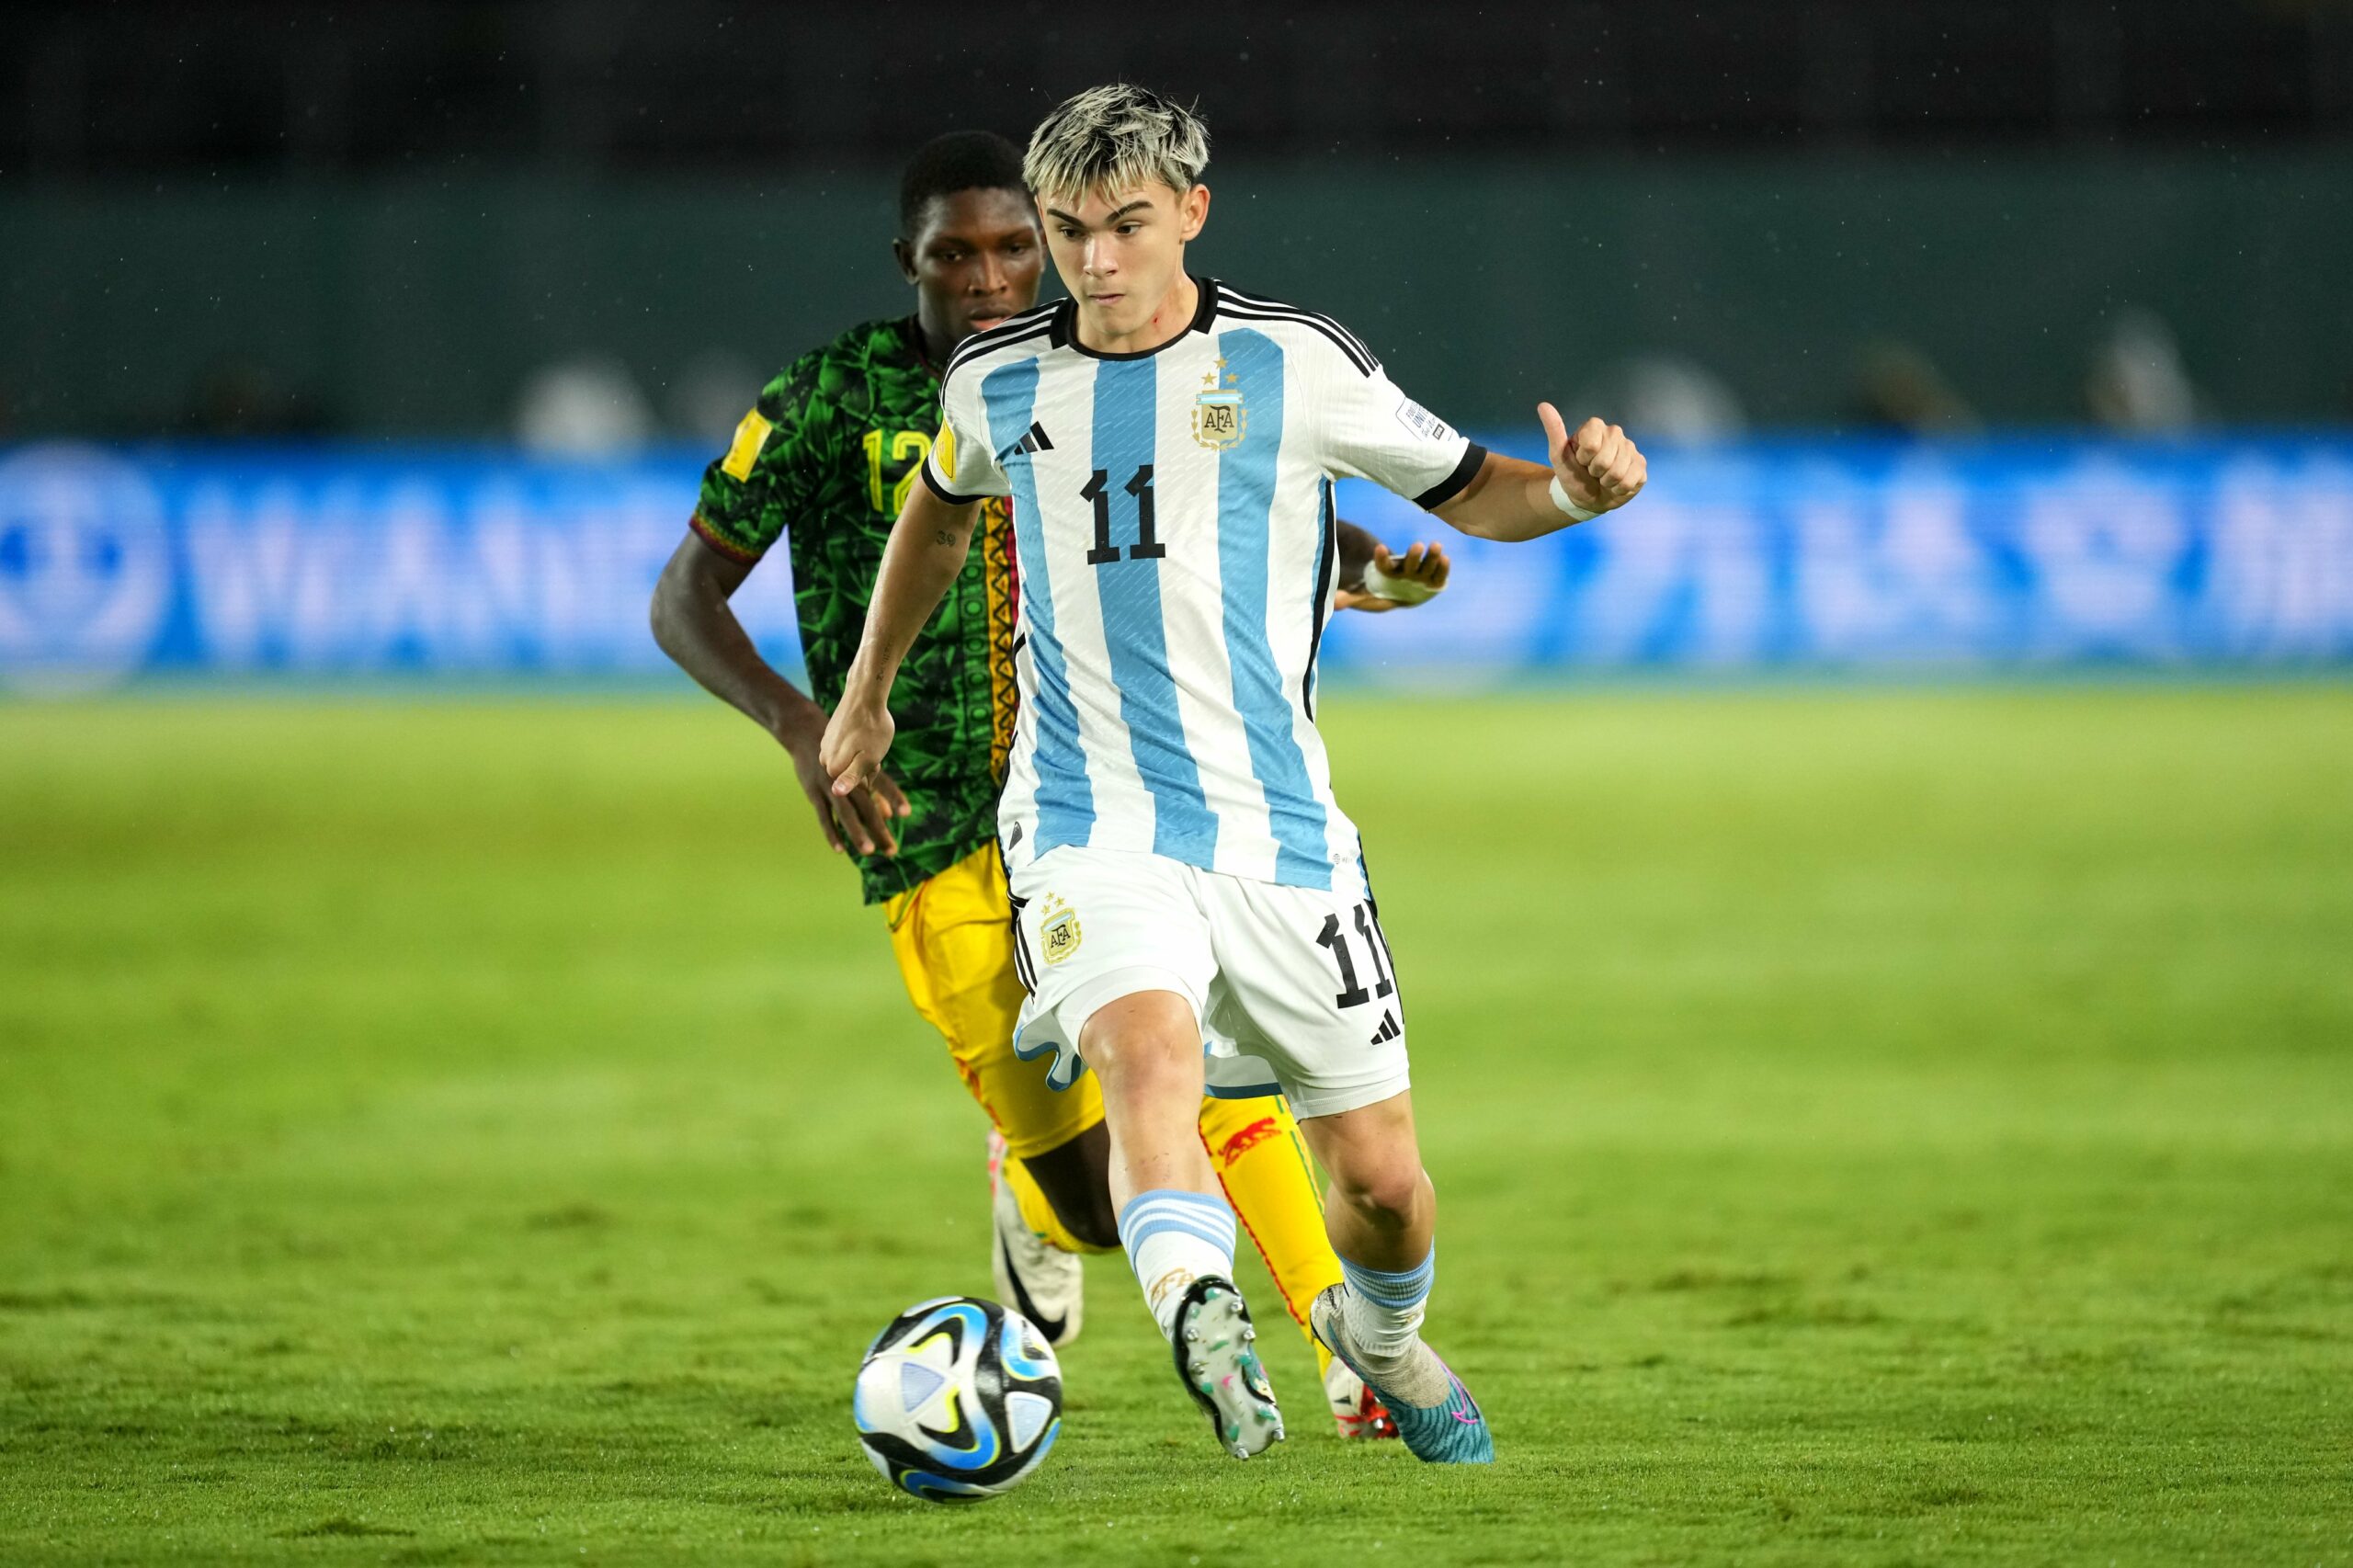 Santi López selección argentina sub 17